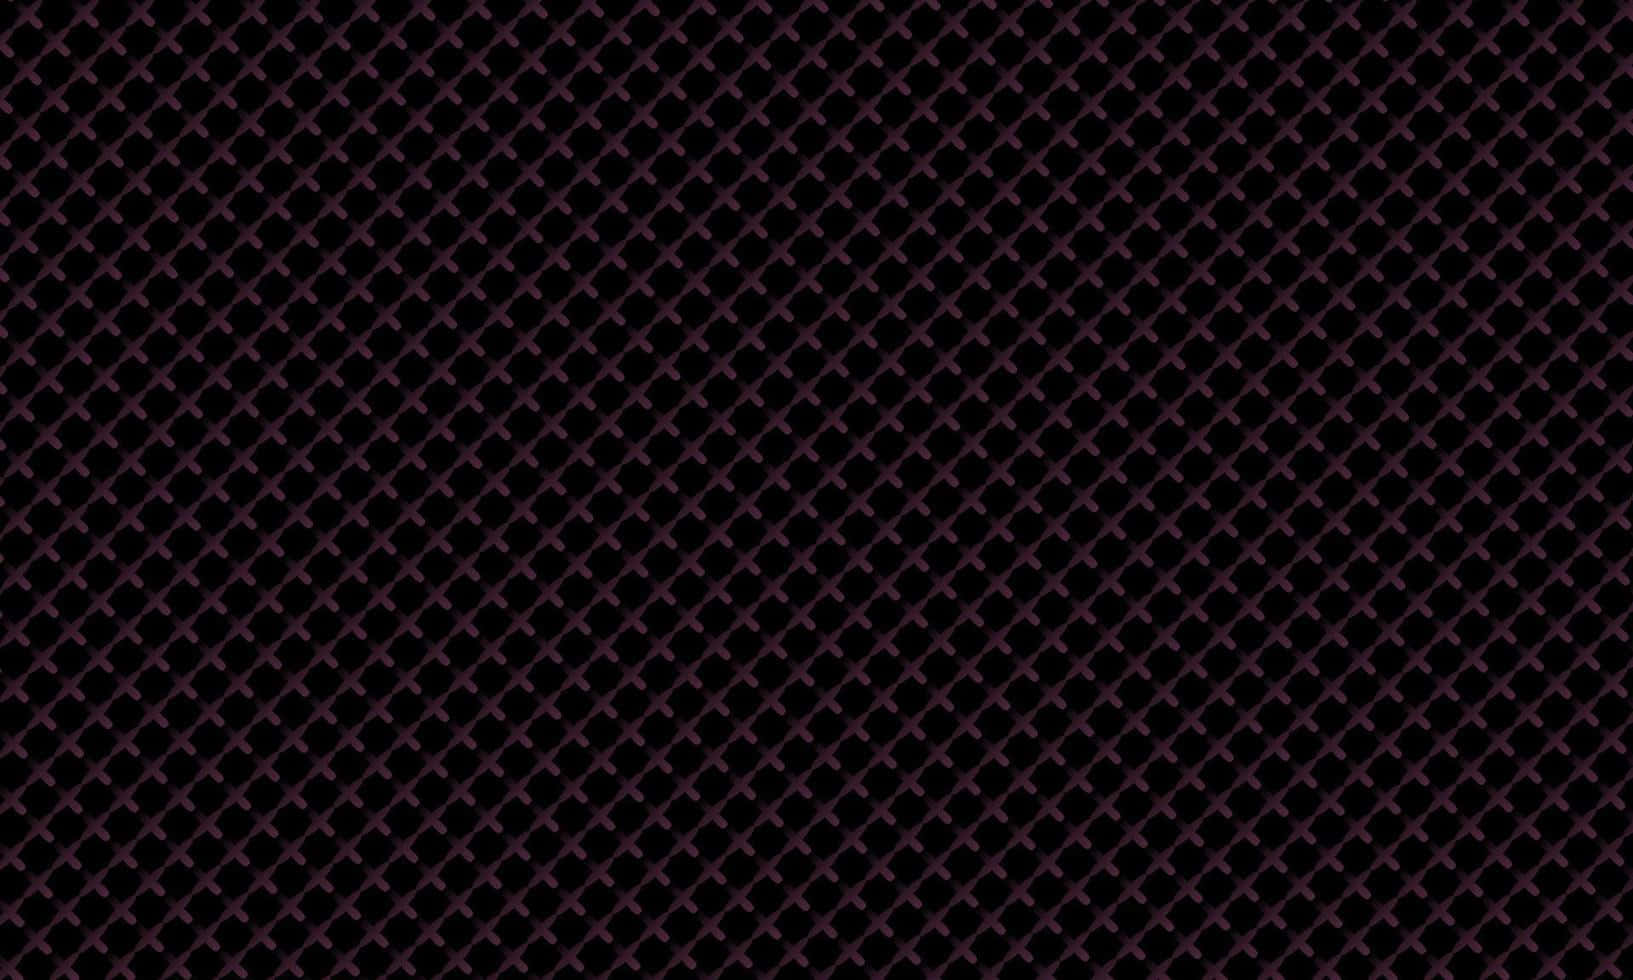 Sort Carbon Fiber 1633 X 980 Wallpaper